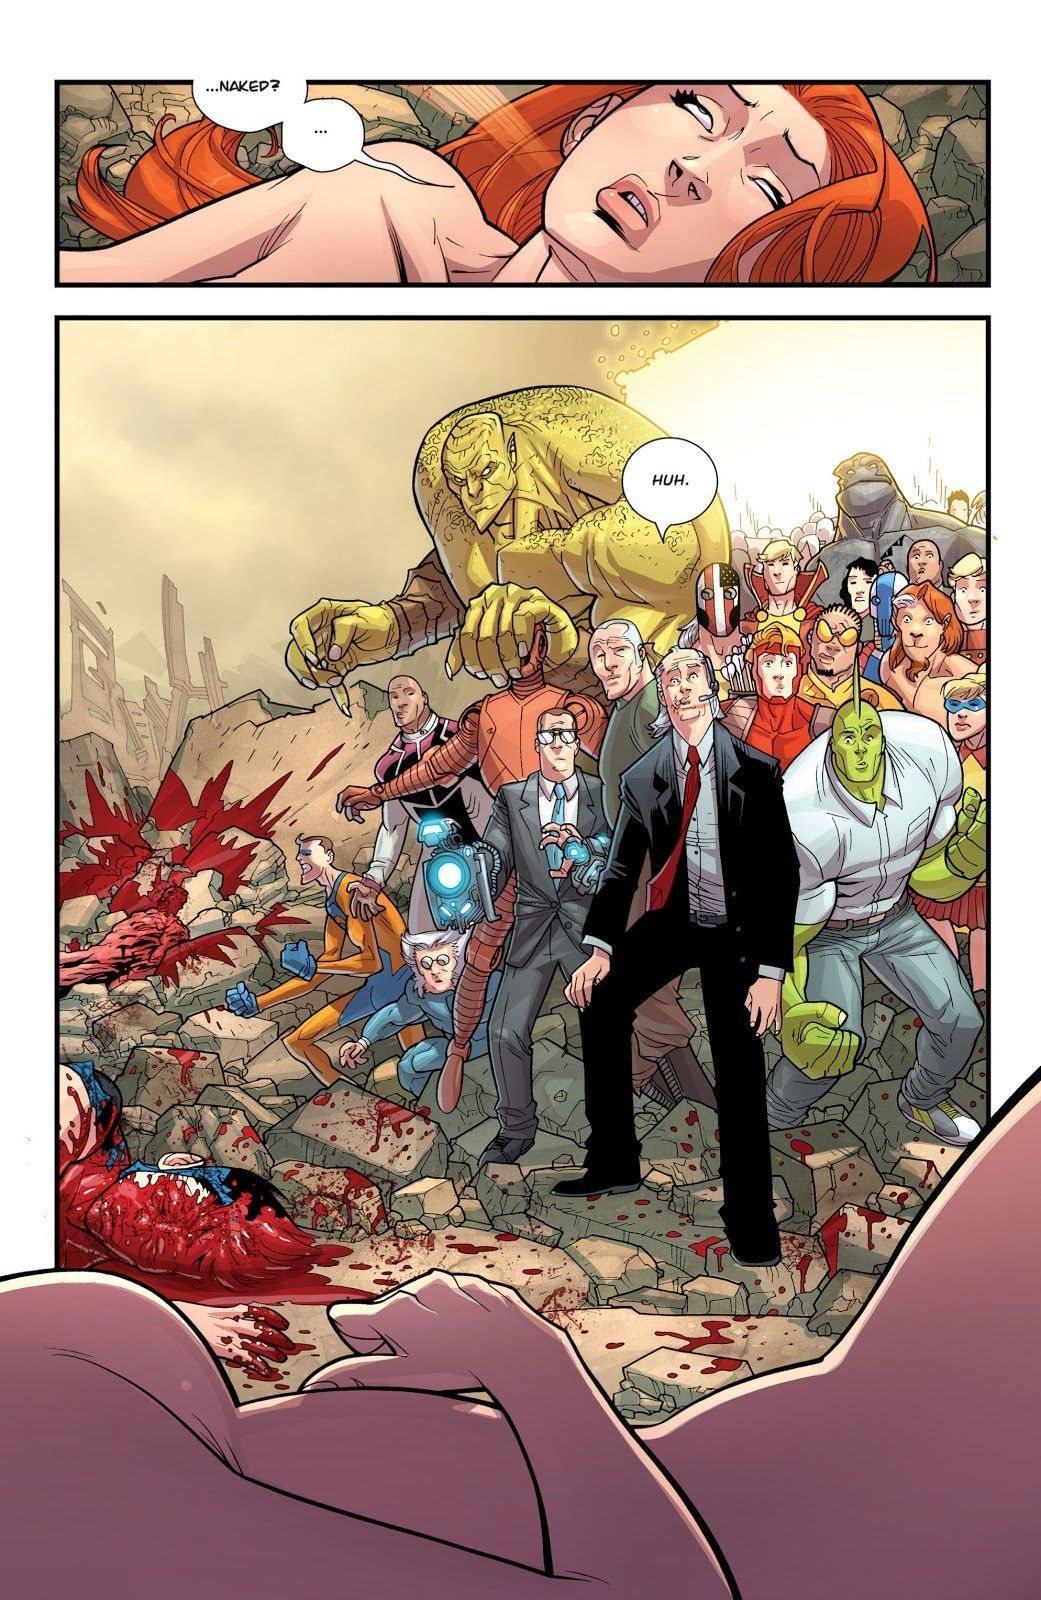 Invincible Comics Issue Atom Eve. Marvel comics art, Image comics, Superhero comic